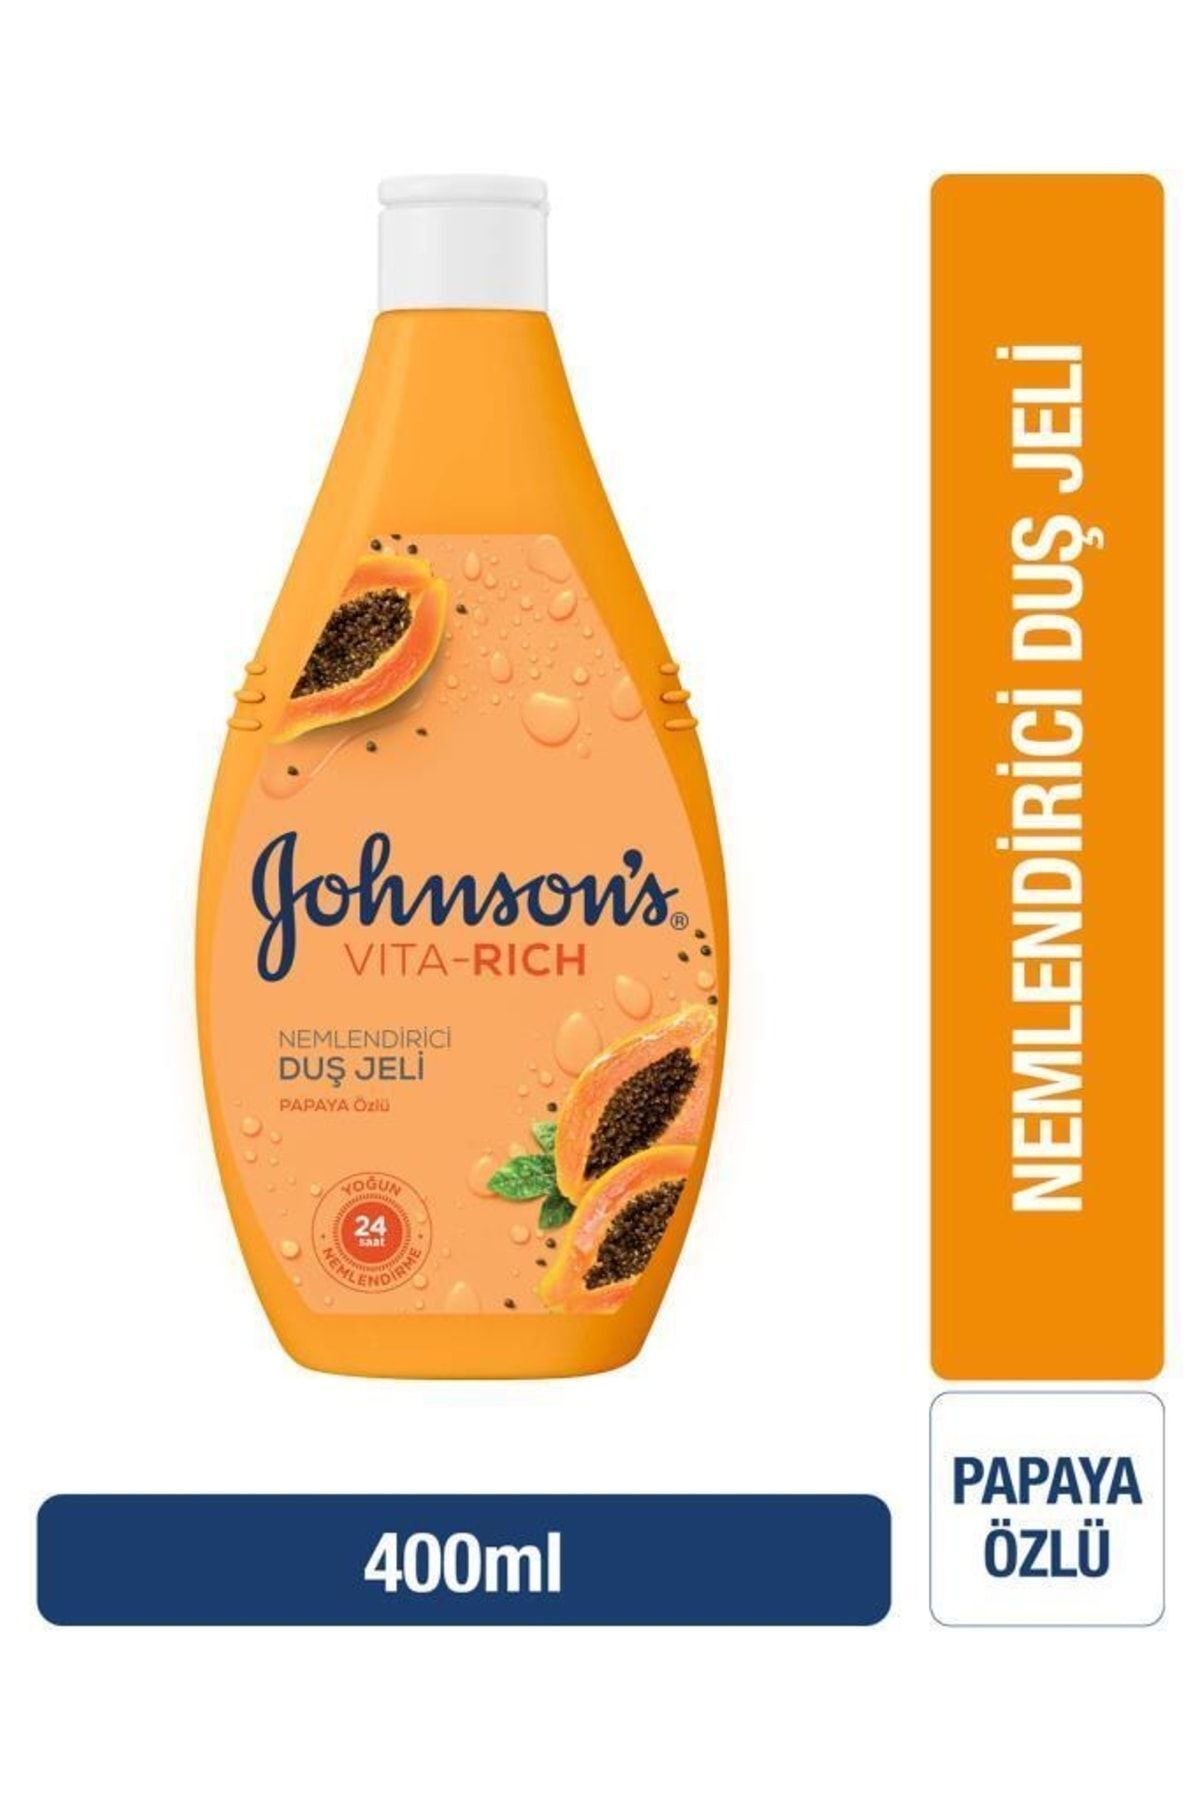 Johnson's Vita-rich Papaya Özlü Nemlendirici Duş Jeli 400ml